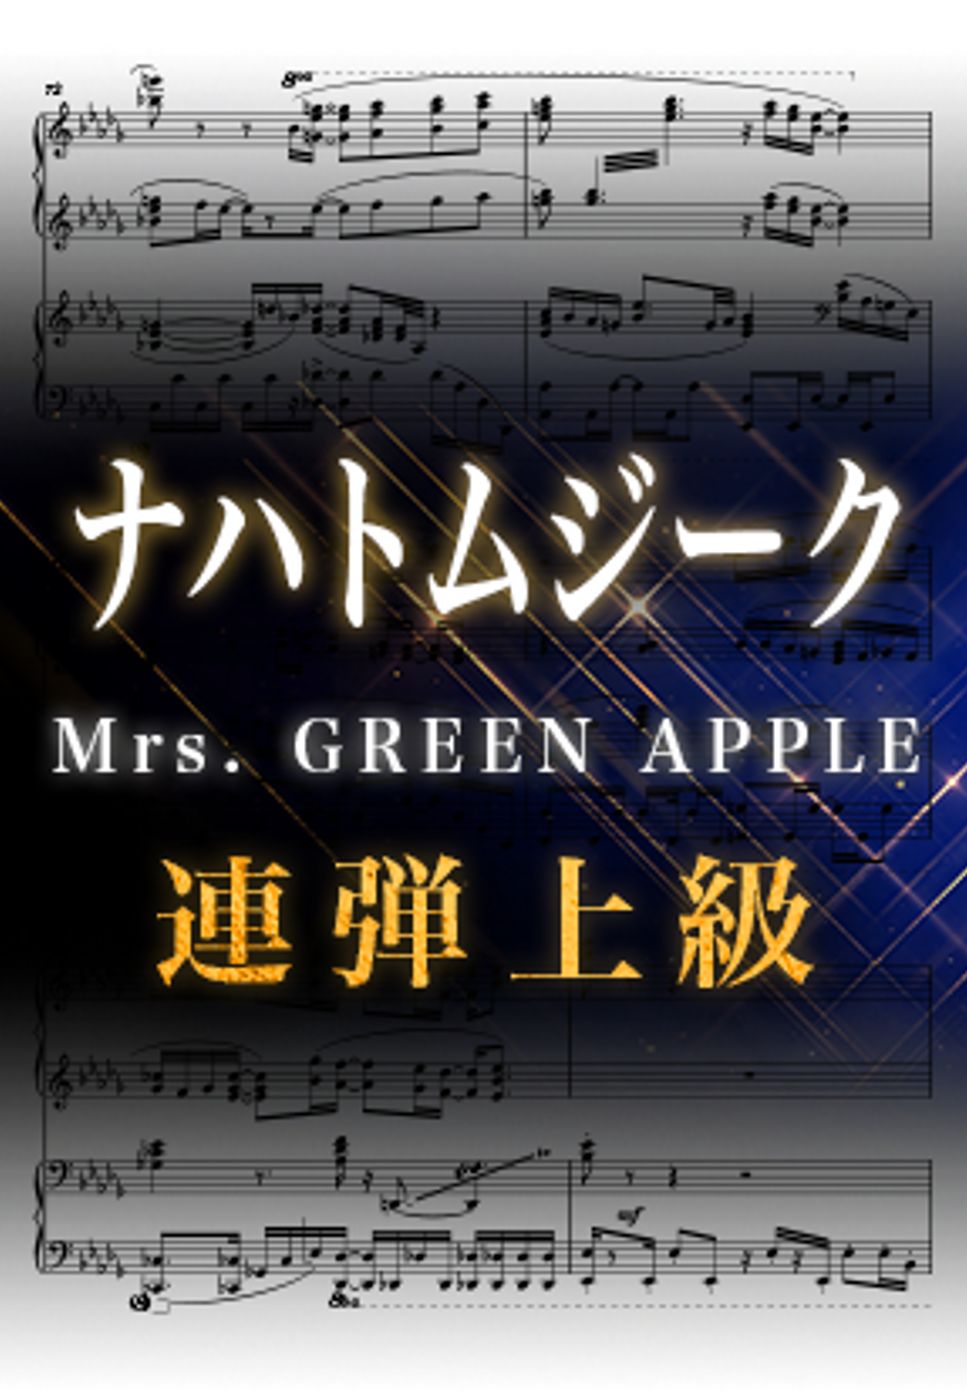 Mrs.GREENAPPLE - ナハトムジーク (ピアノ連弾上級  /	映画『サイレントラブ』主題歌) by Suu